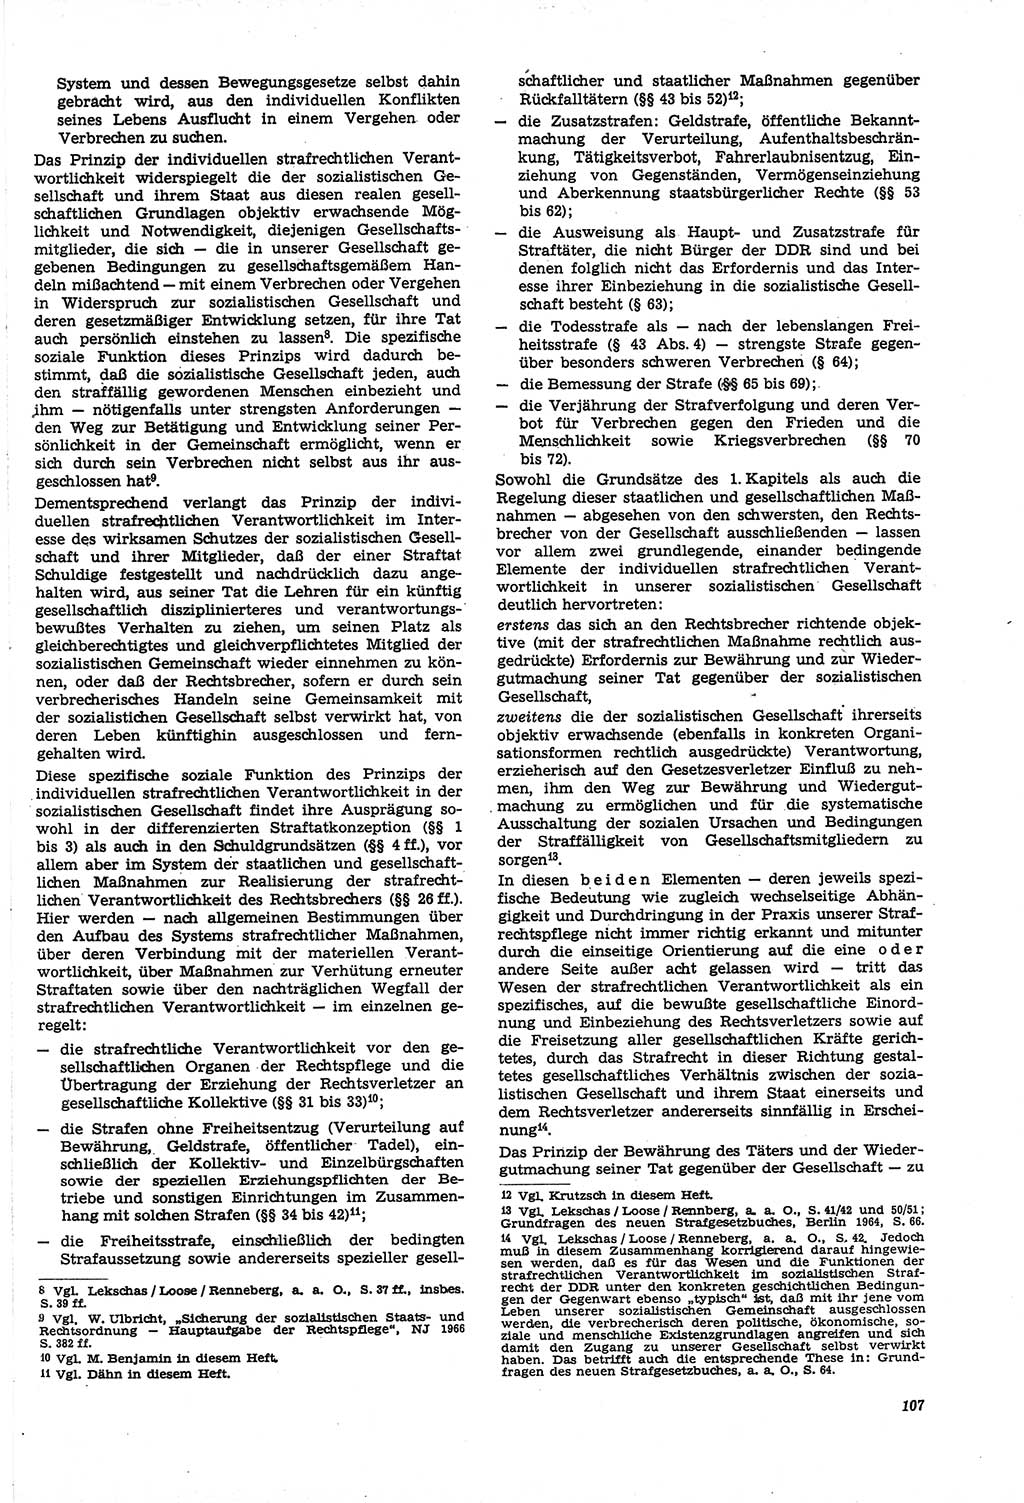 Neue Justiz (NJ), Zeitschrift für Recht und Rechtswissenschaft [Deutsche Demokratische Republik (DDR)], 21. Jahrgang 1967, Seite 107 (NJ DDR 1967, S. 107)